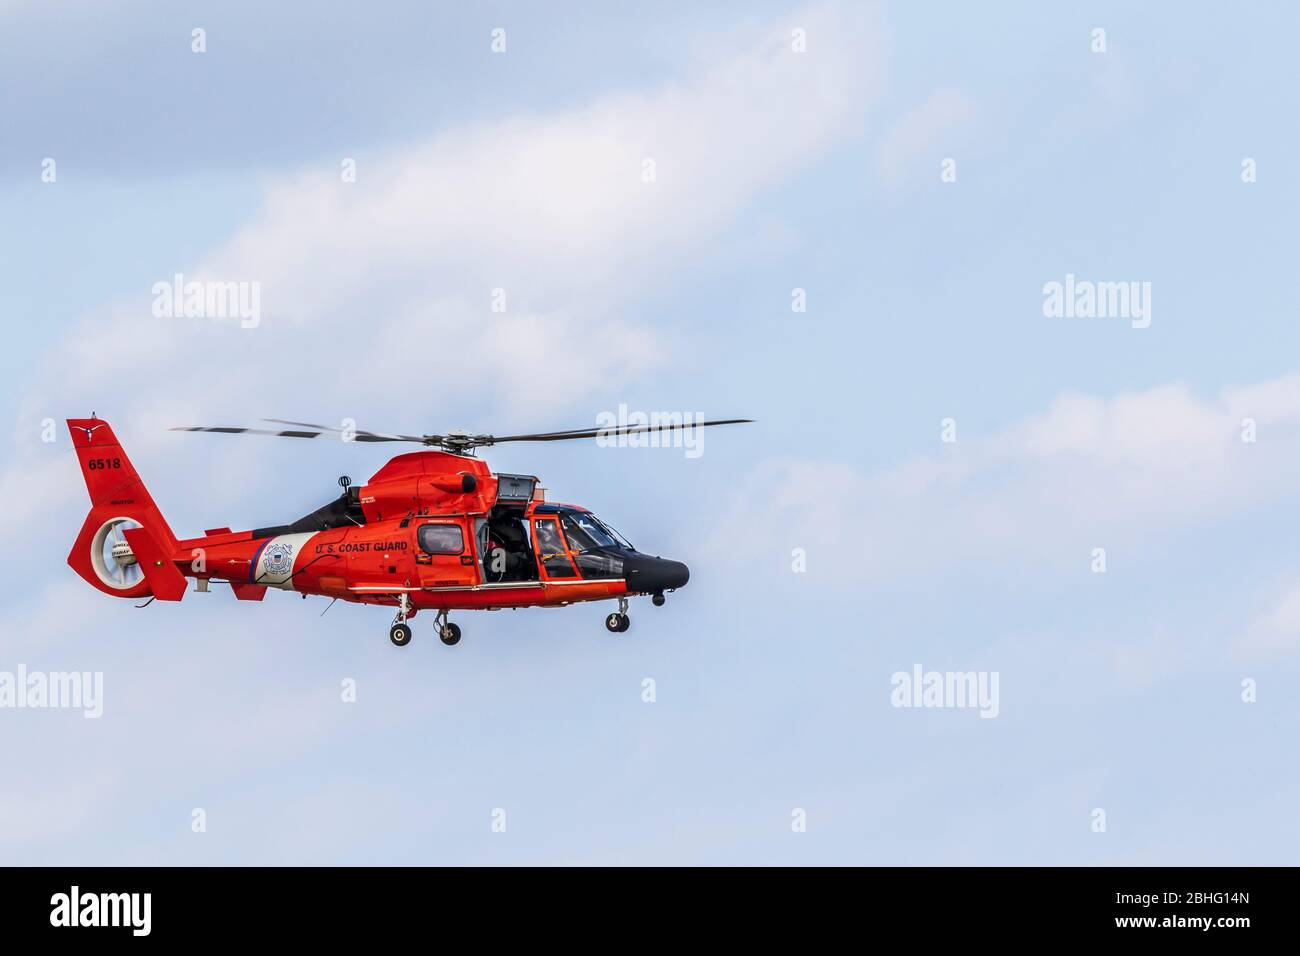 Guardia Costera DE EE.UU. MH-65 demostración de búsqueda y rescate de helicópteros con delfines en el 2019 Wings Over Houston Airshow, Houston, Texas. Foto de stock